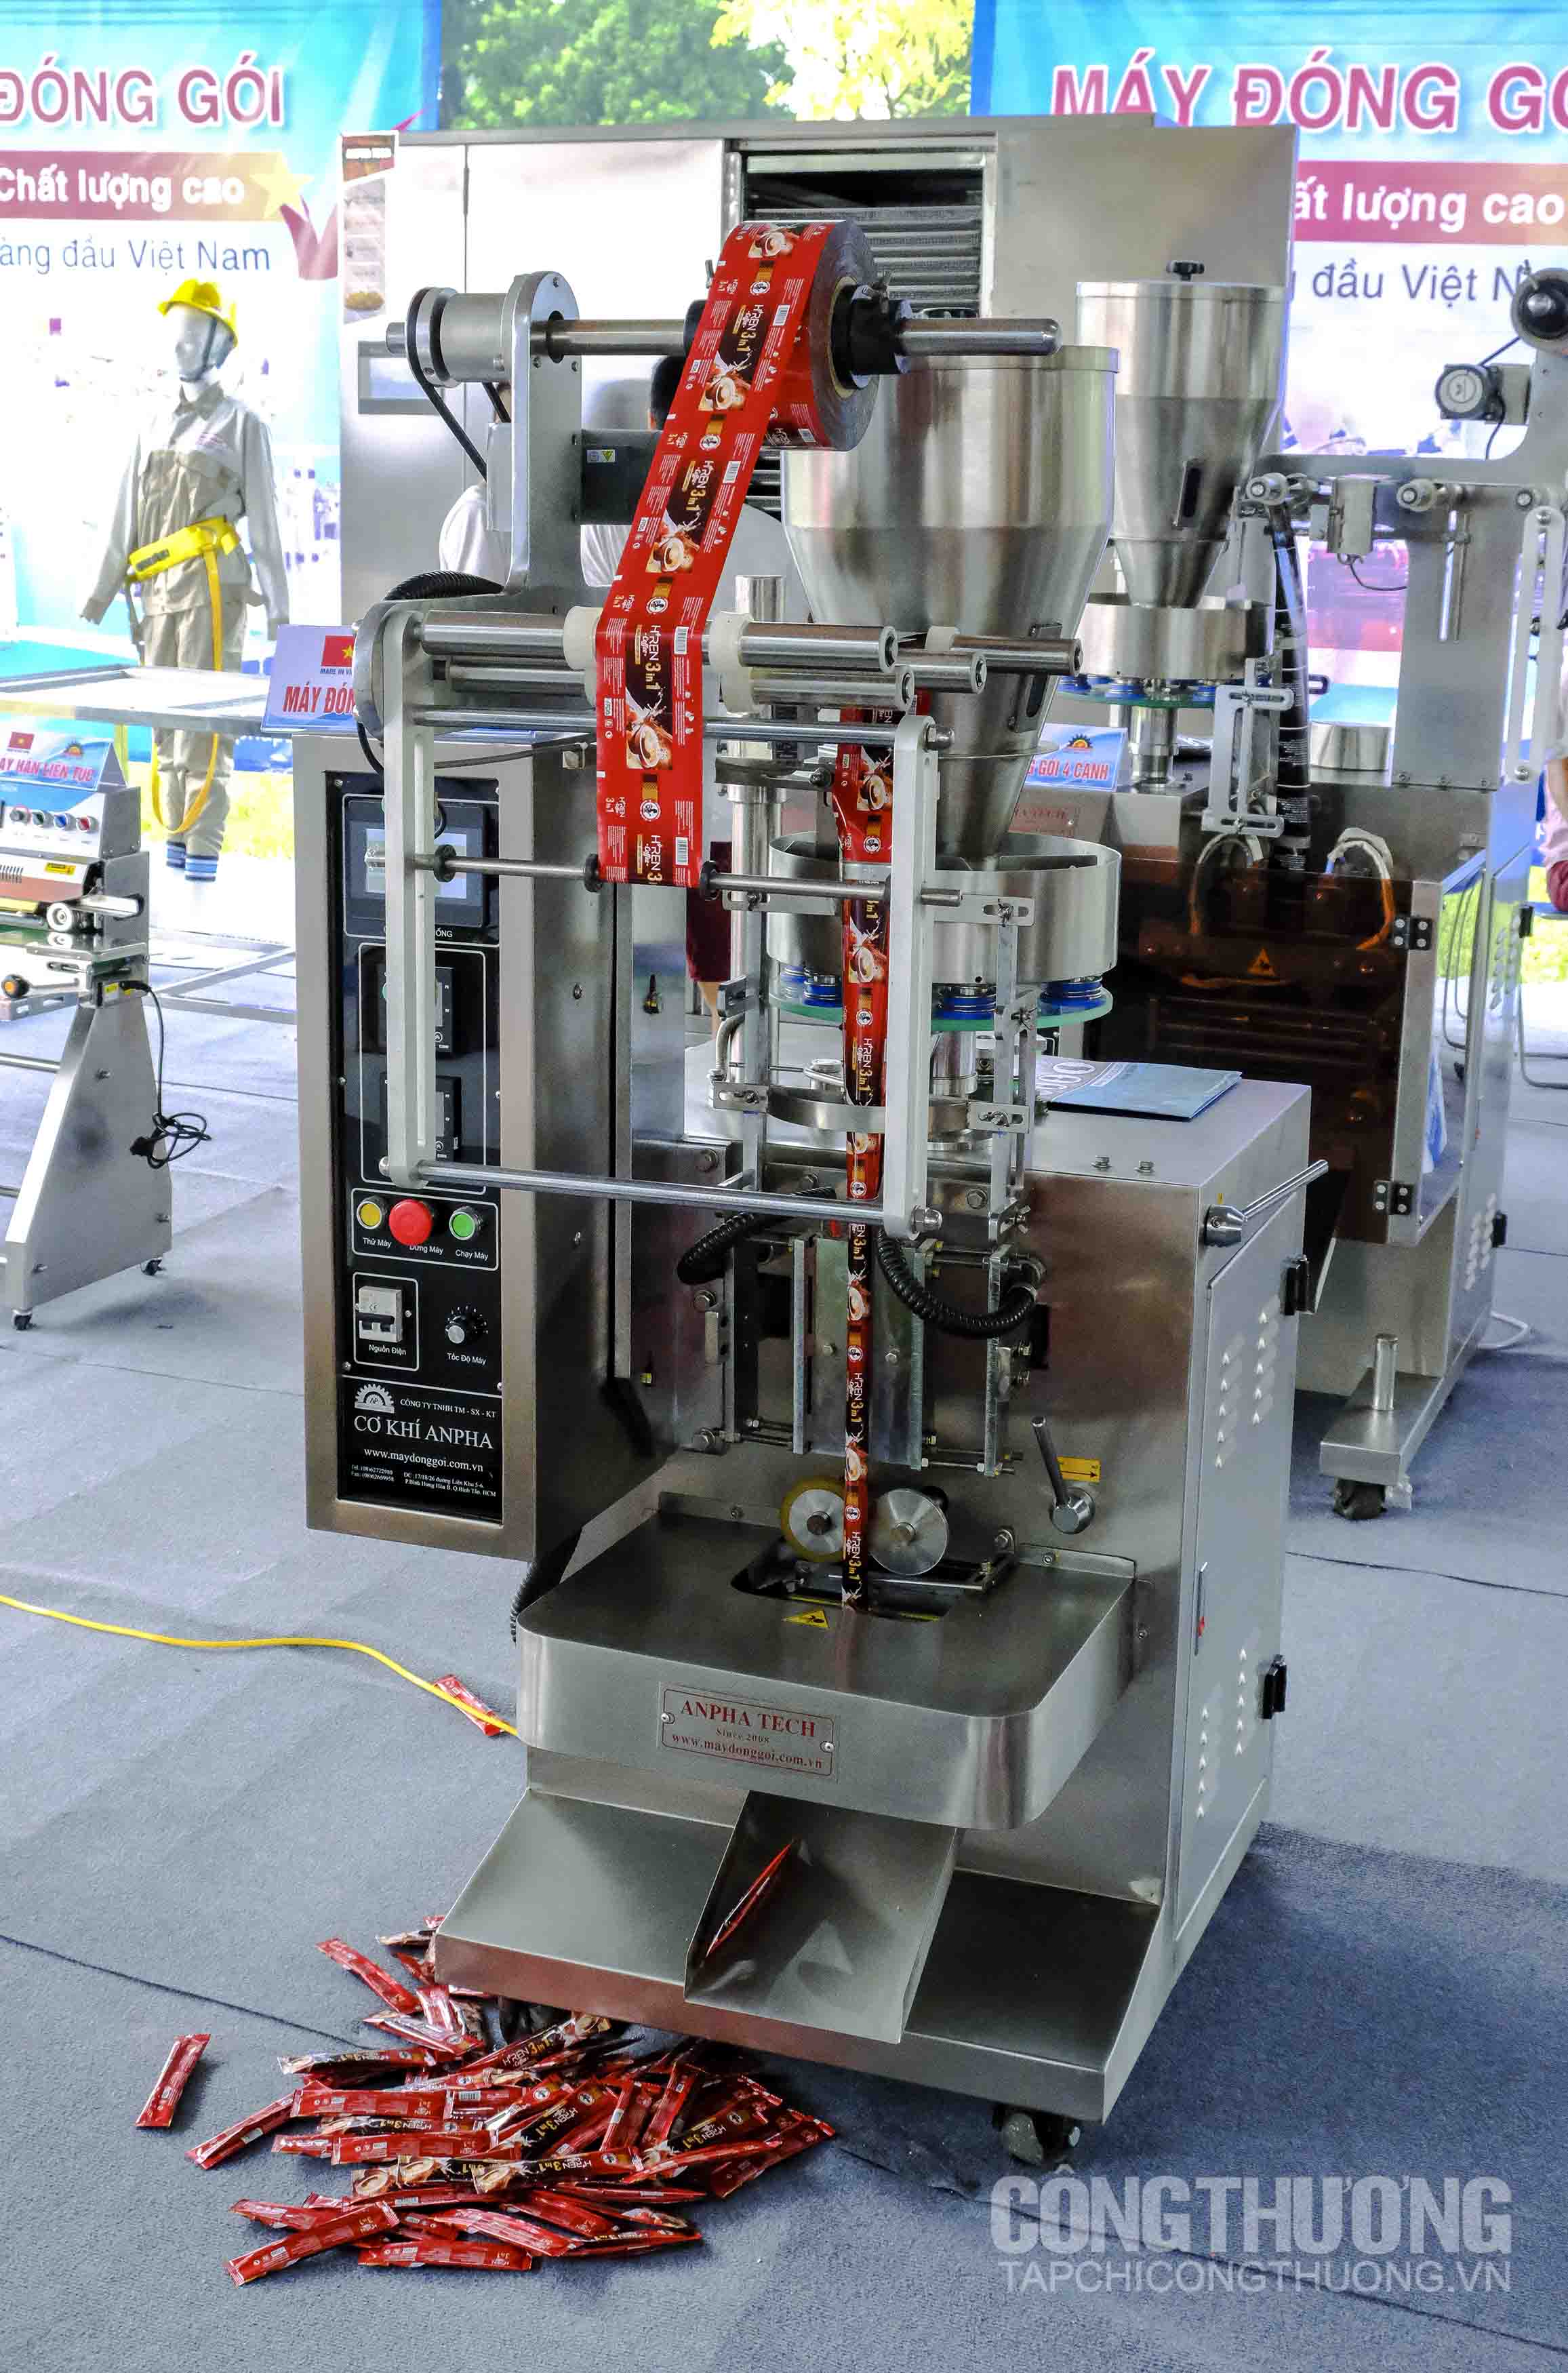 Một số loại máy móc, thiết bị được giới thiệu tại Triển lãm hội chợ hàng công nghiệp nông thôn tiêu biểu năm 2019